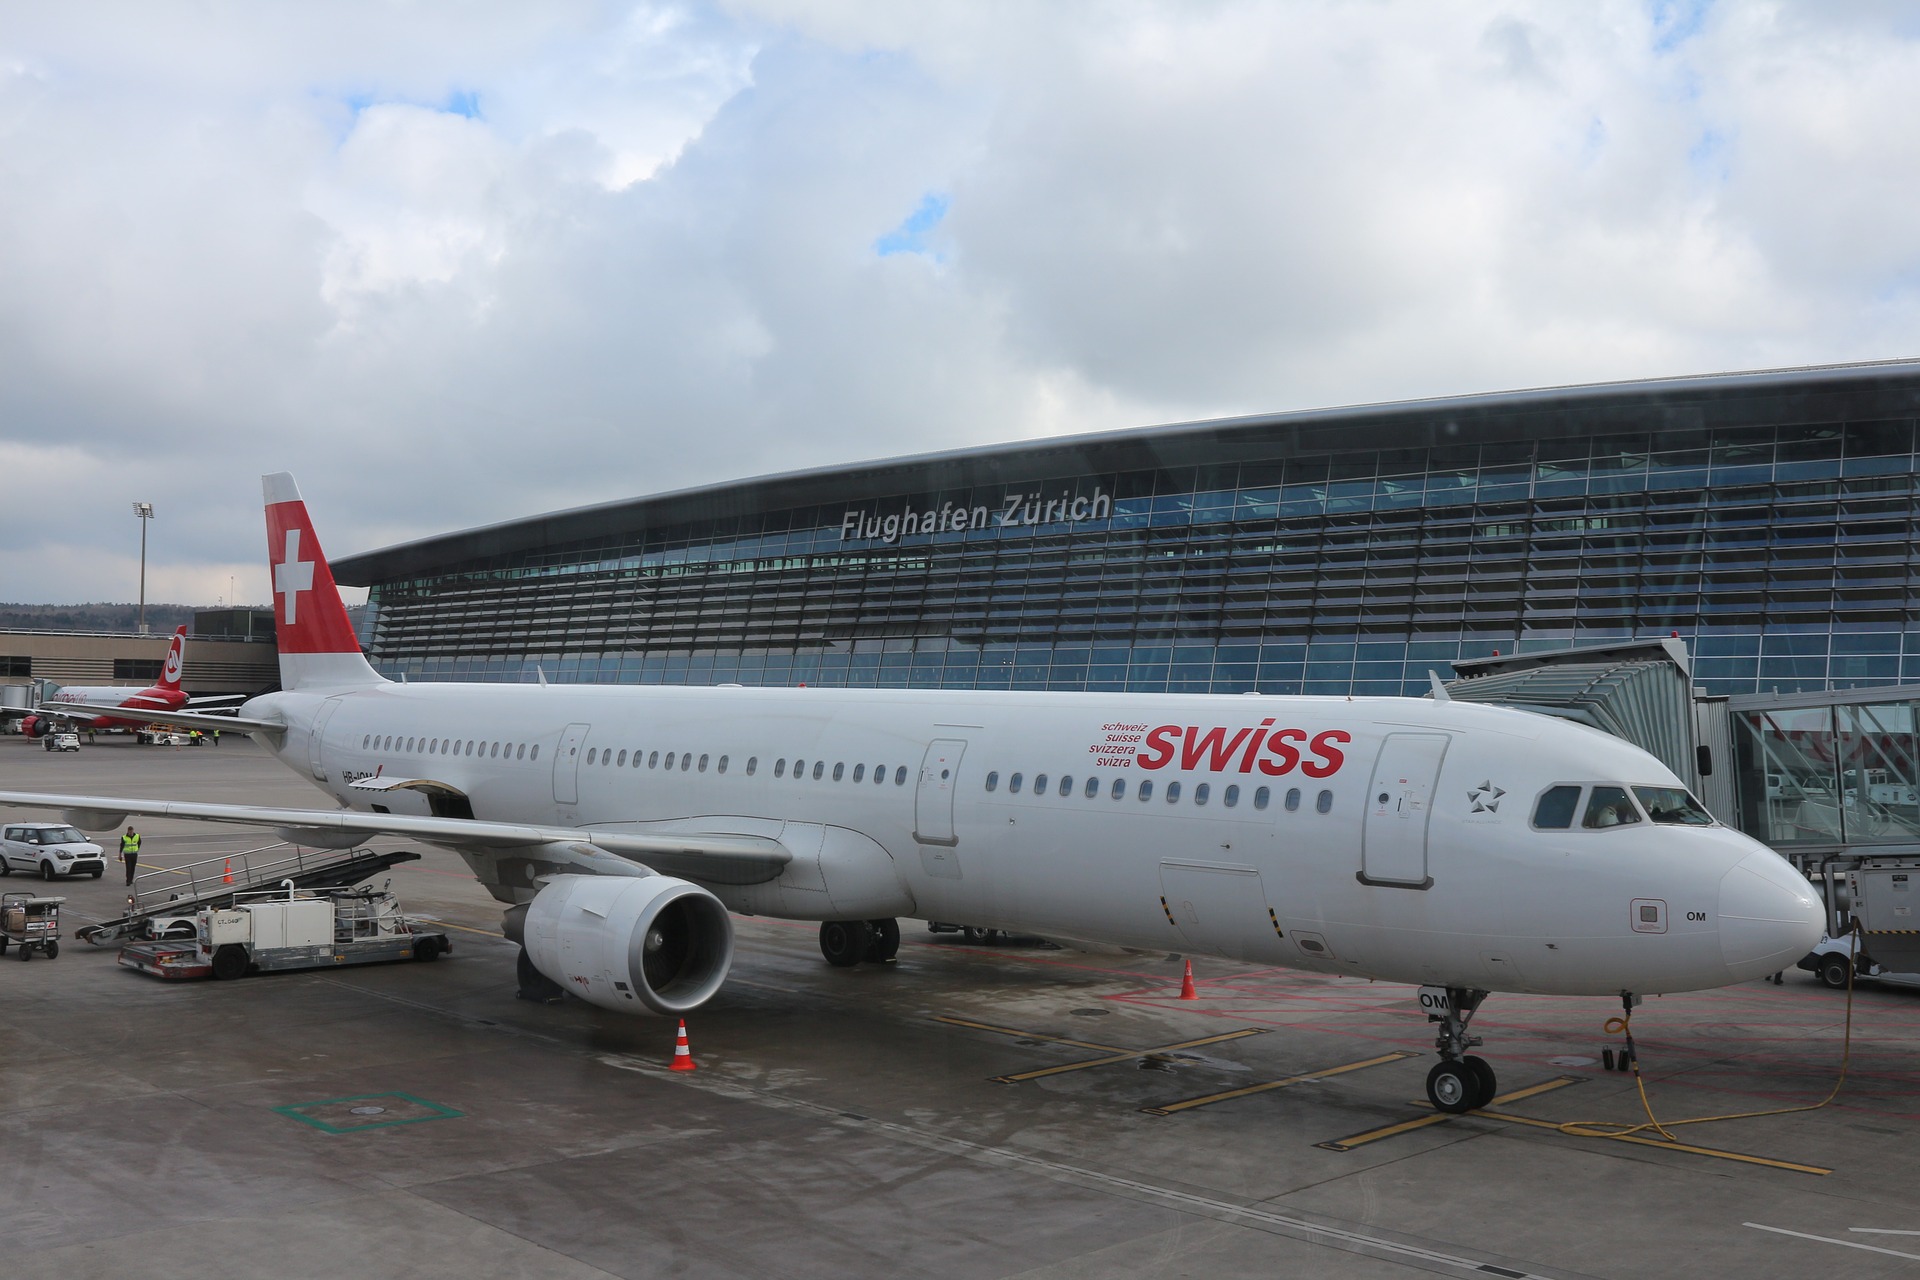 Swiss airplane at Kloten airport Zurich, Switzerland